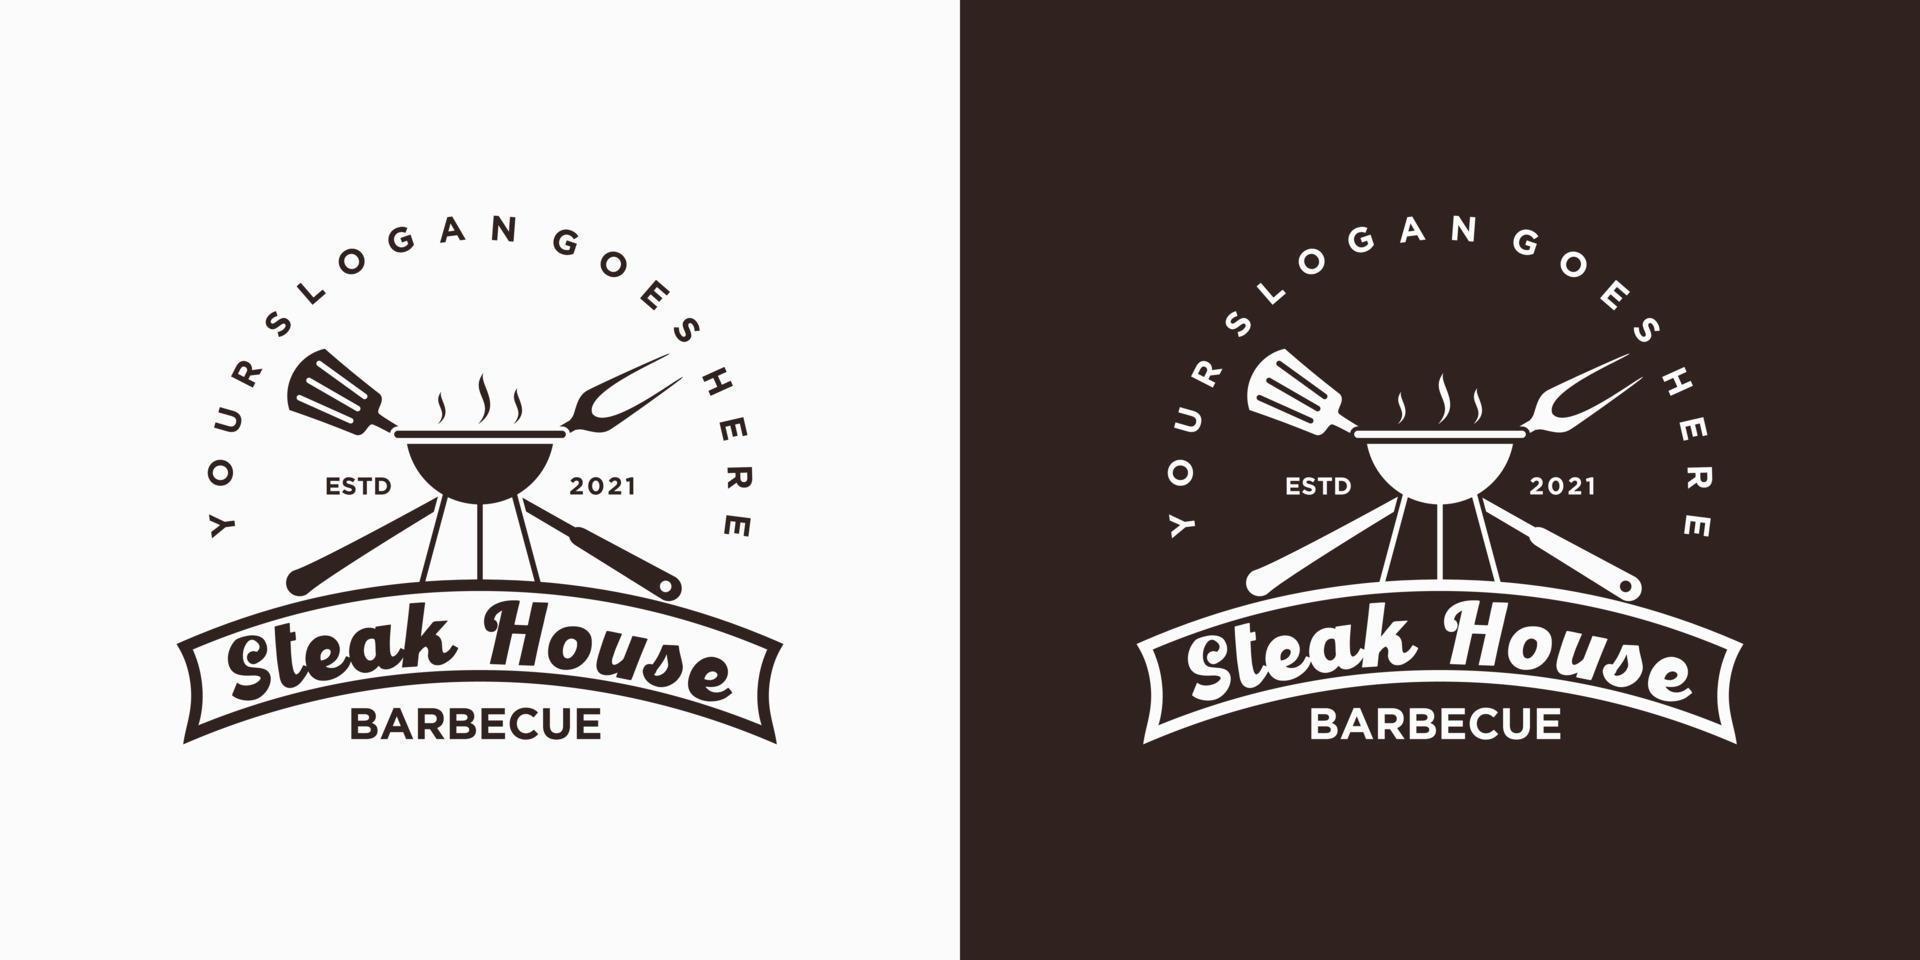 inspiration de logo de steak house vintage vecteur